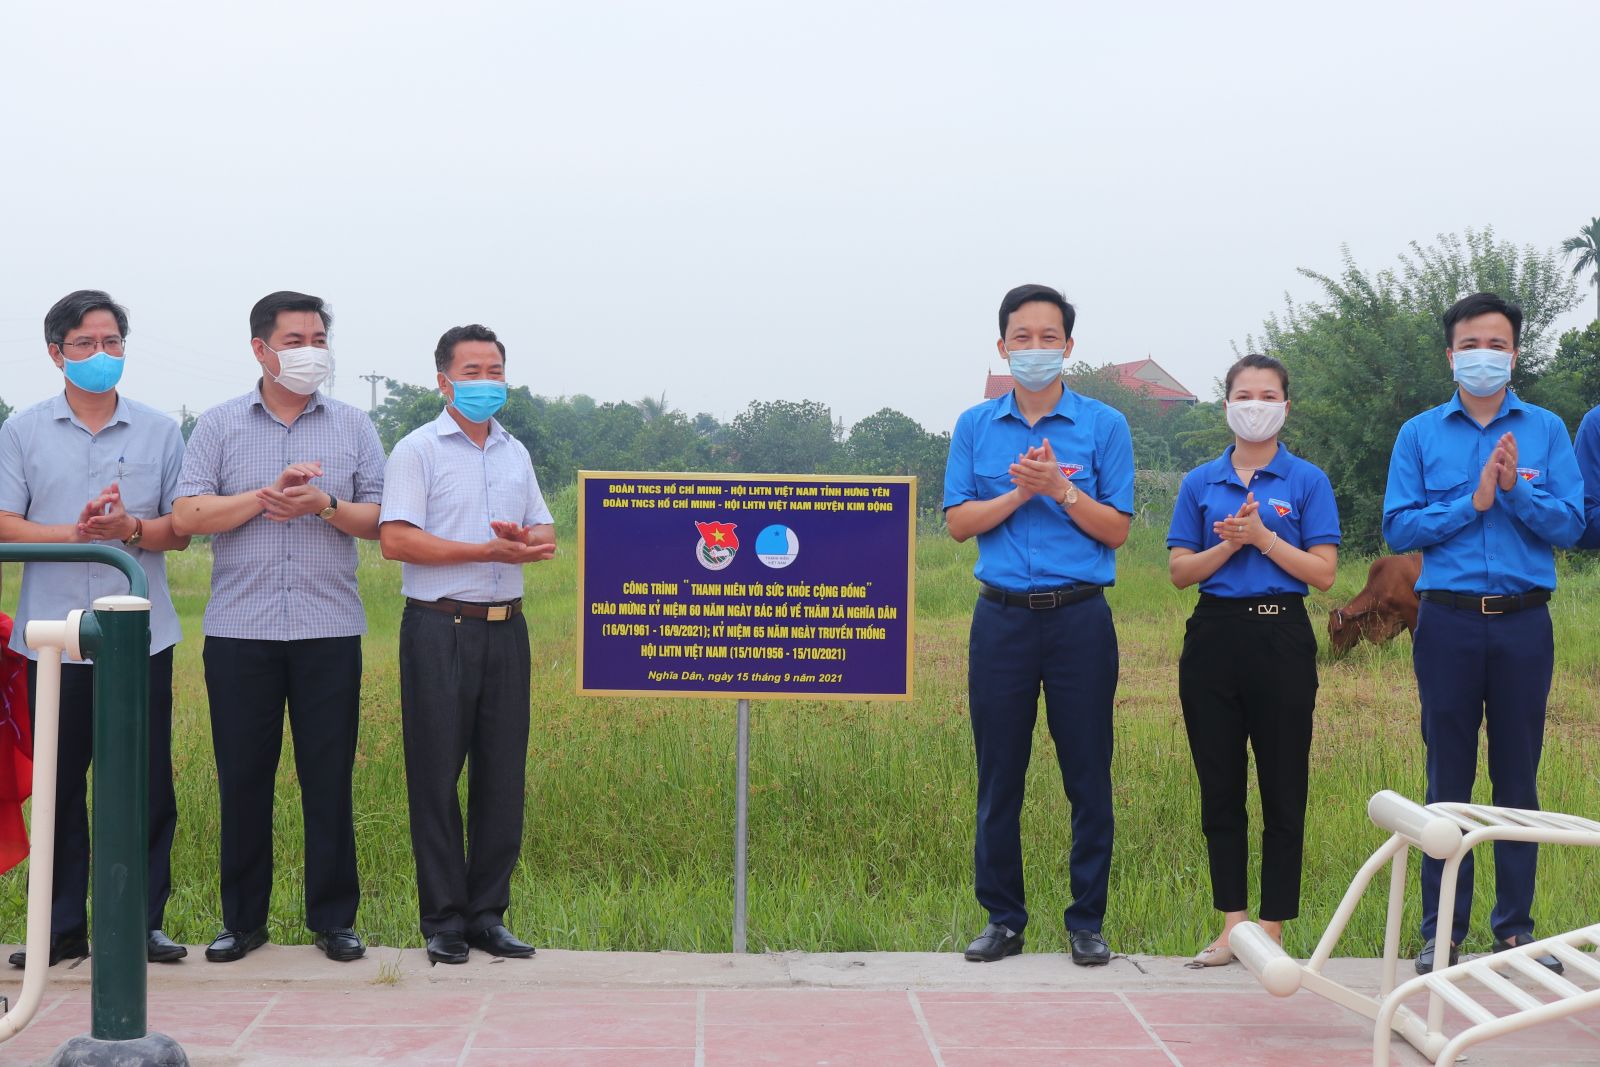 Ủy ban Hội LHTN Việt Nam tỉnh tổ chức Khánh thành công trình thanh niên “Thanh niên với sức khỏe cộng đồng” chào mừng kỷ niệm 65 năm Ngày truyền thống Hội LHTN Việt Nam (15/10/1956 - 15/10/2021)